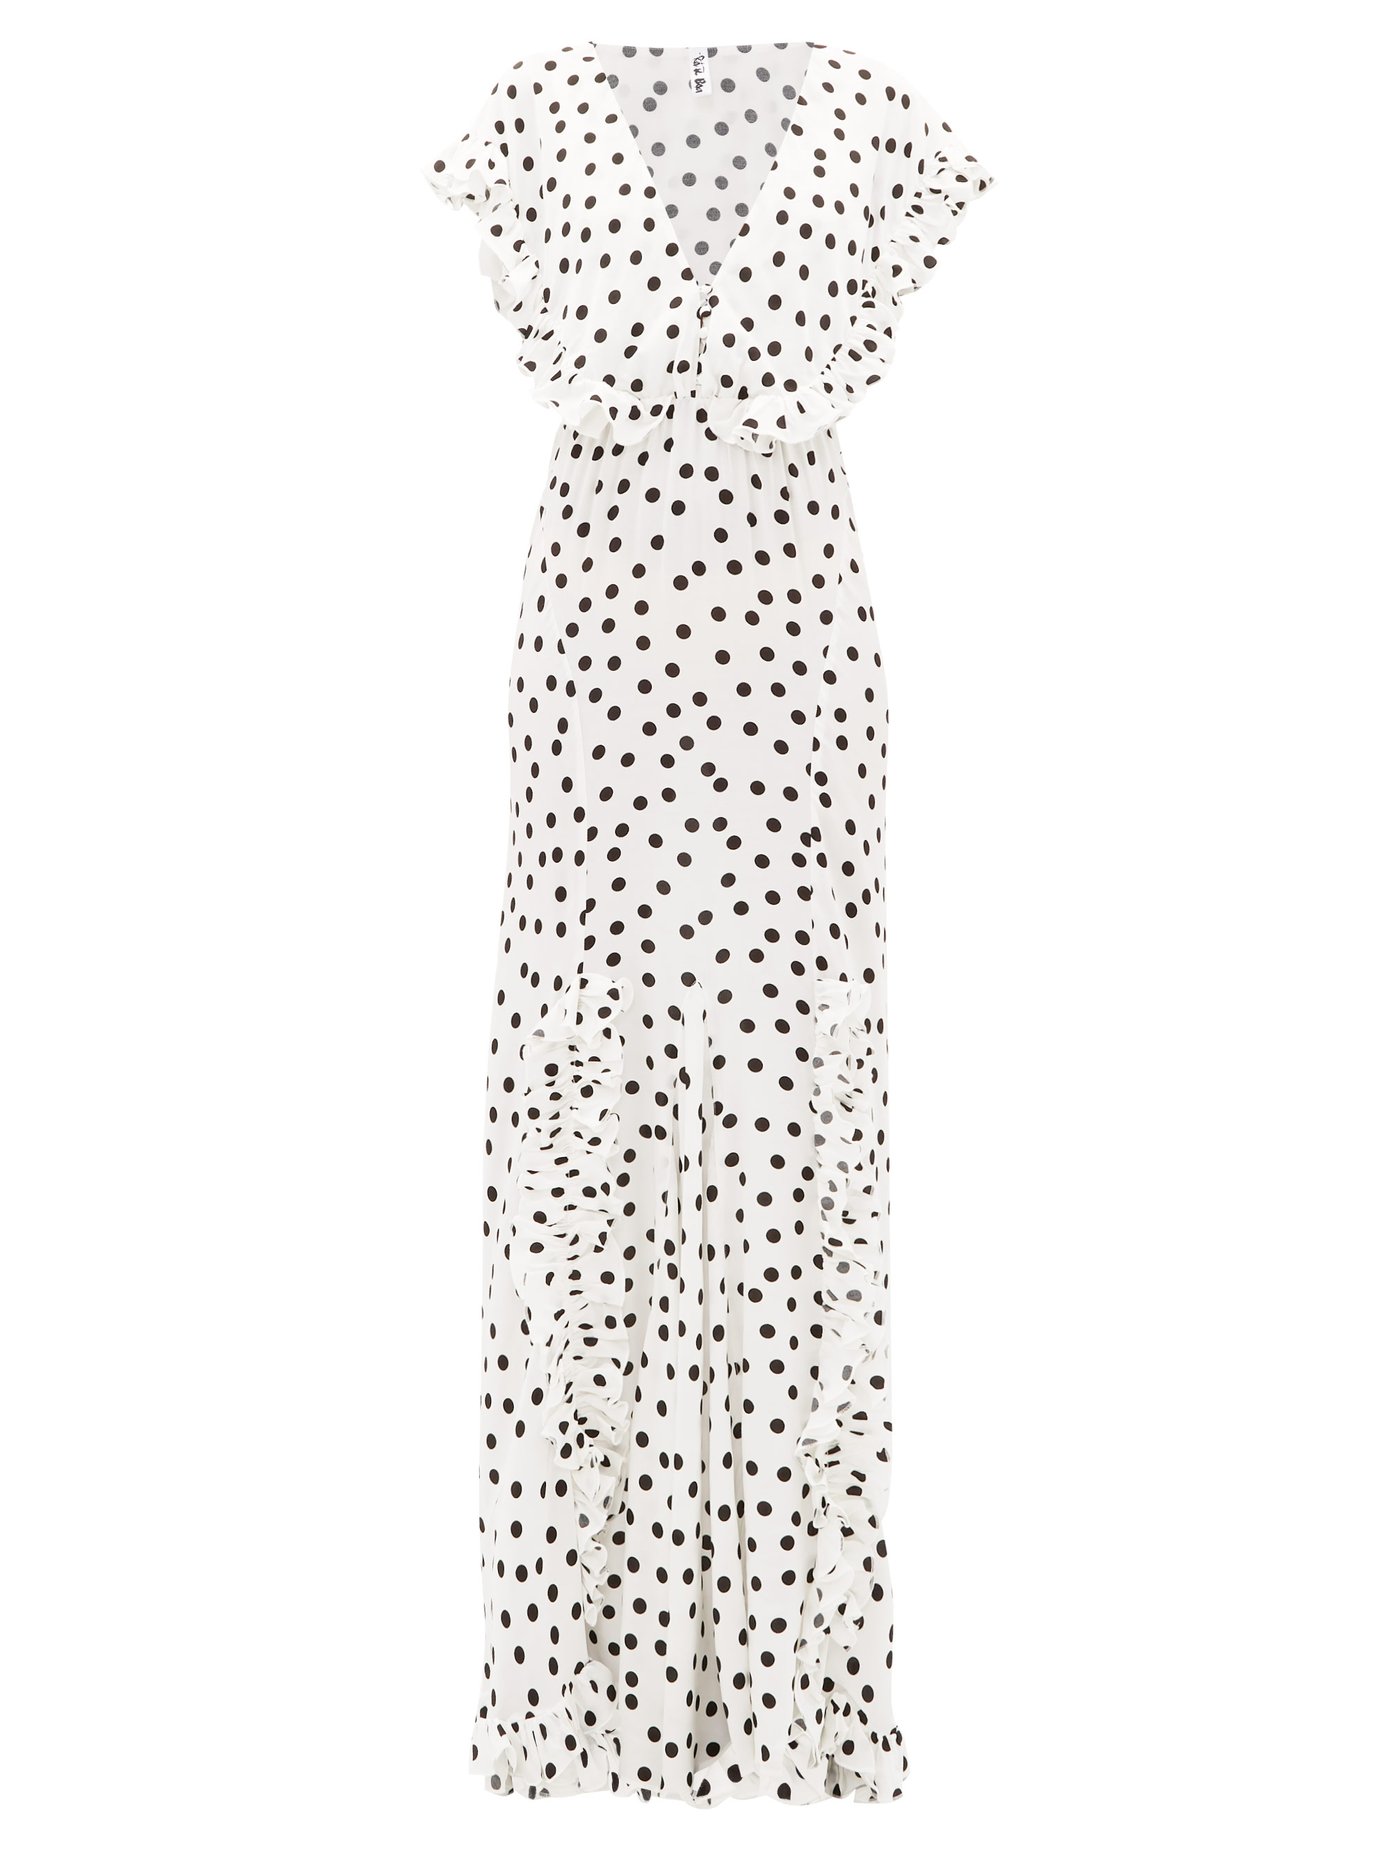 white maxi polka dot dress